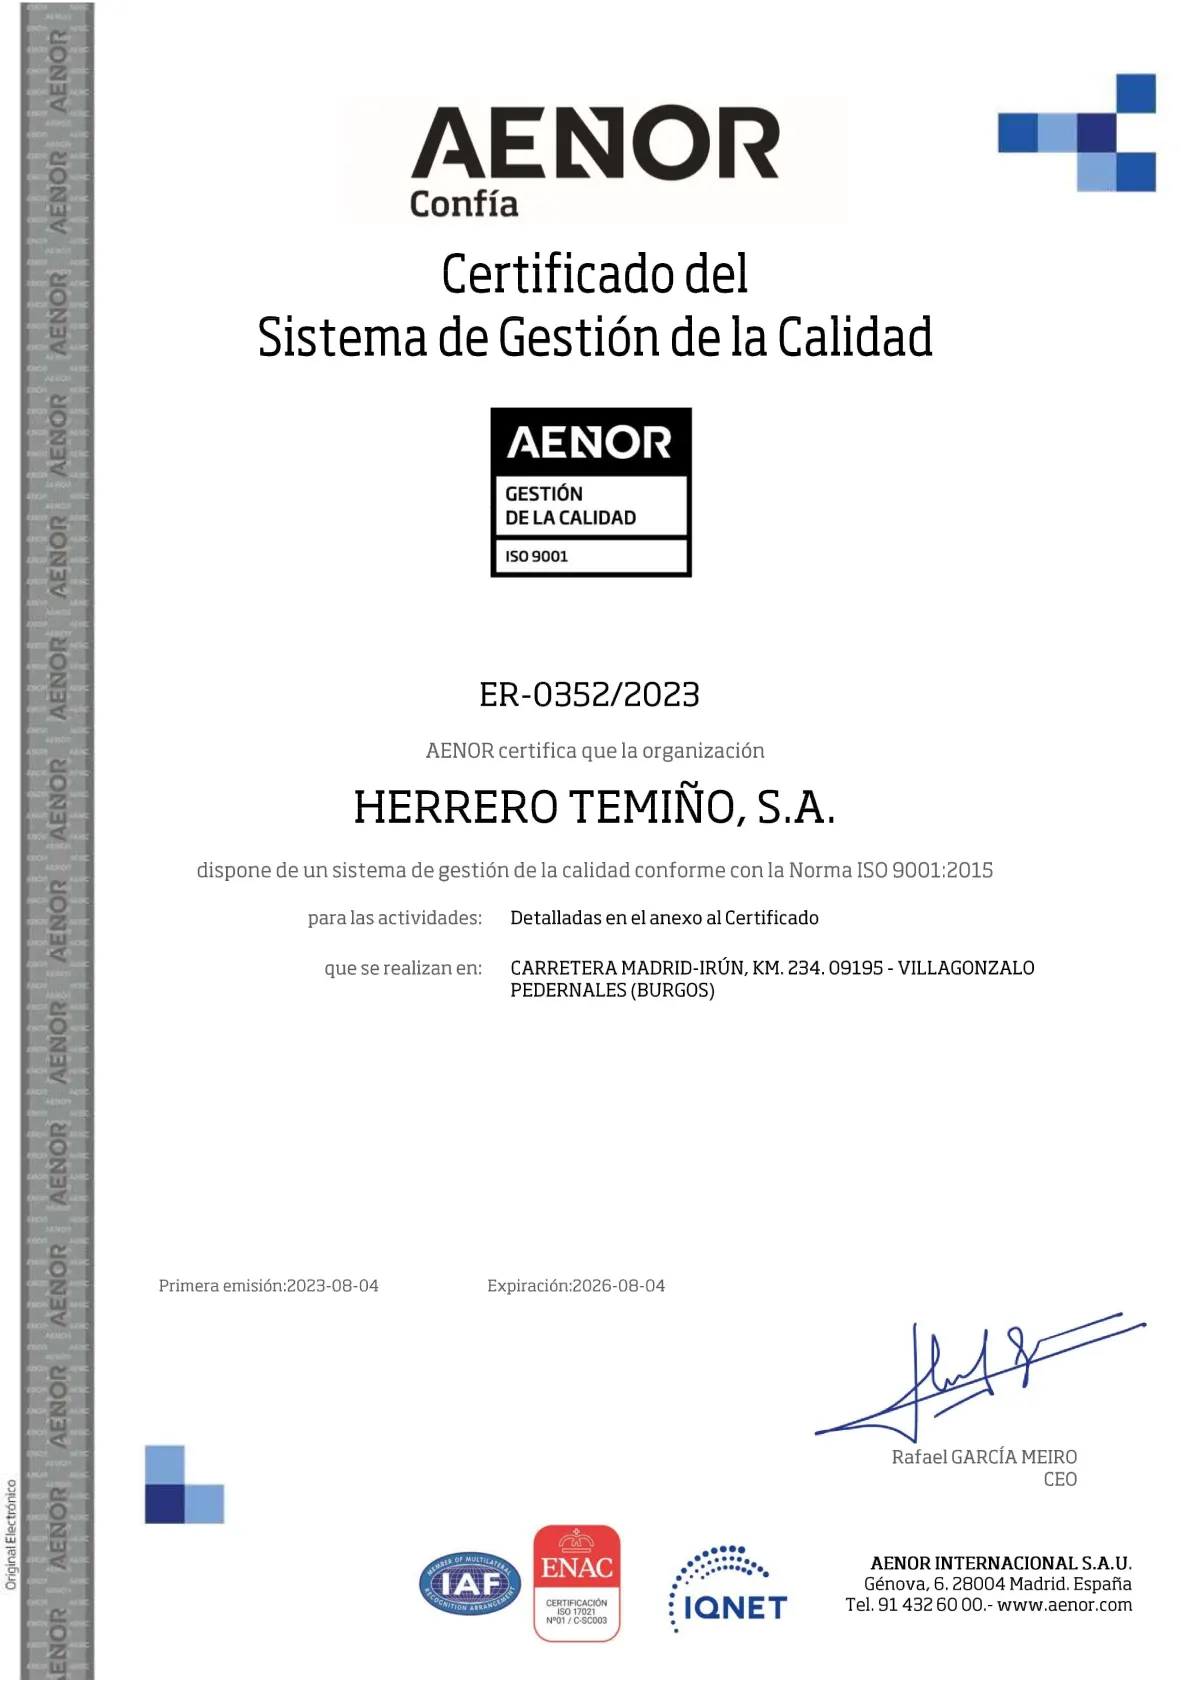 Certificado del sistema de gestión de calidad iso 9001